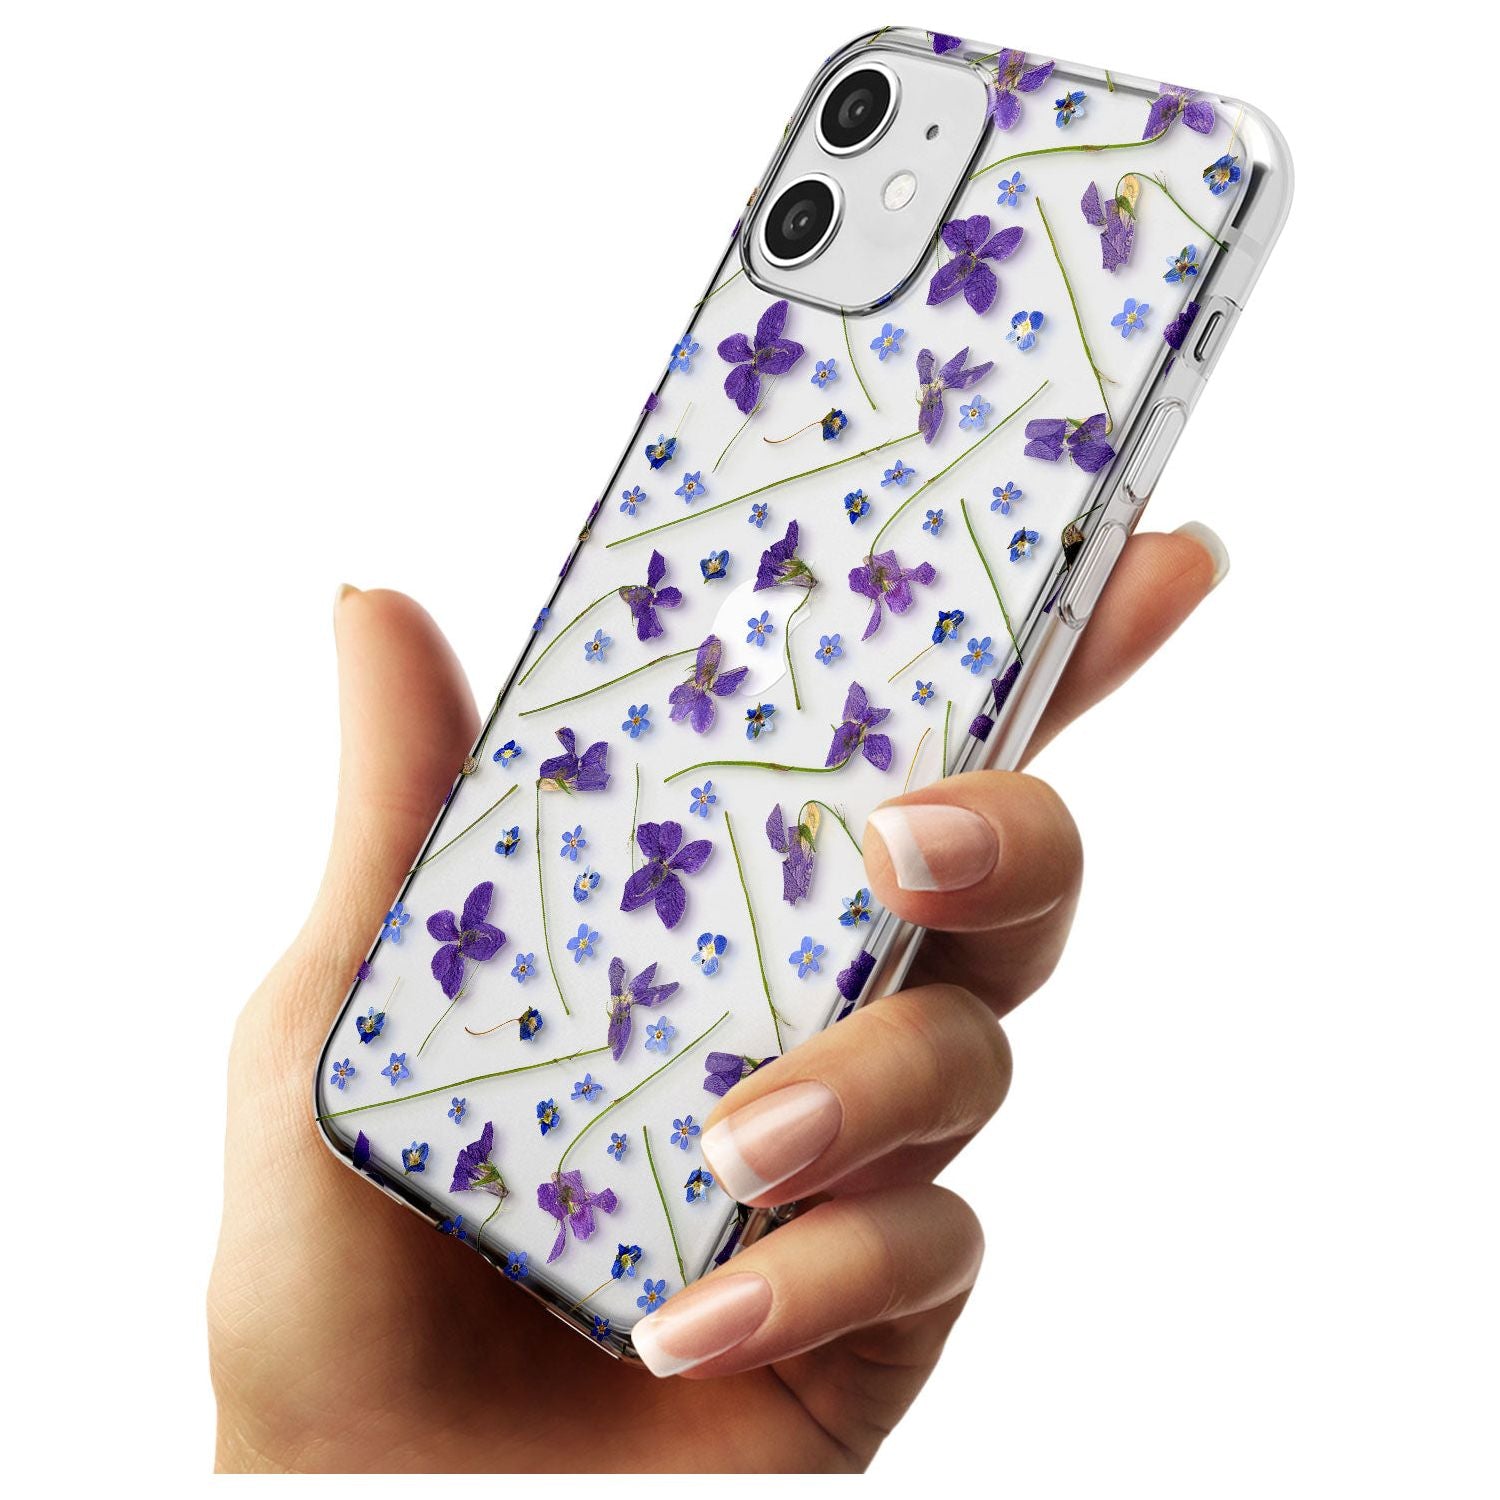 Violet & Blue Floral Pattern Design Slim TPU Phone Case for iPhone 11